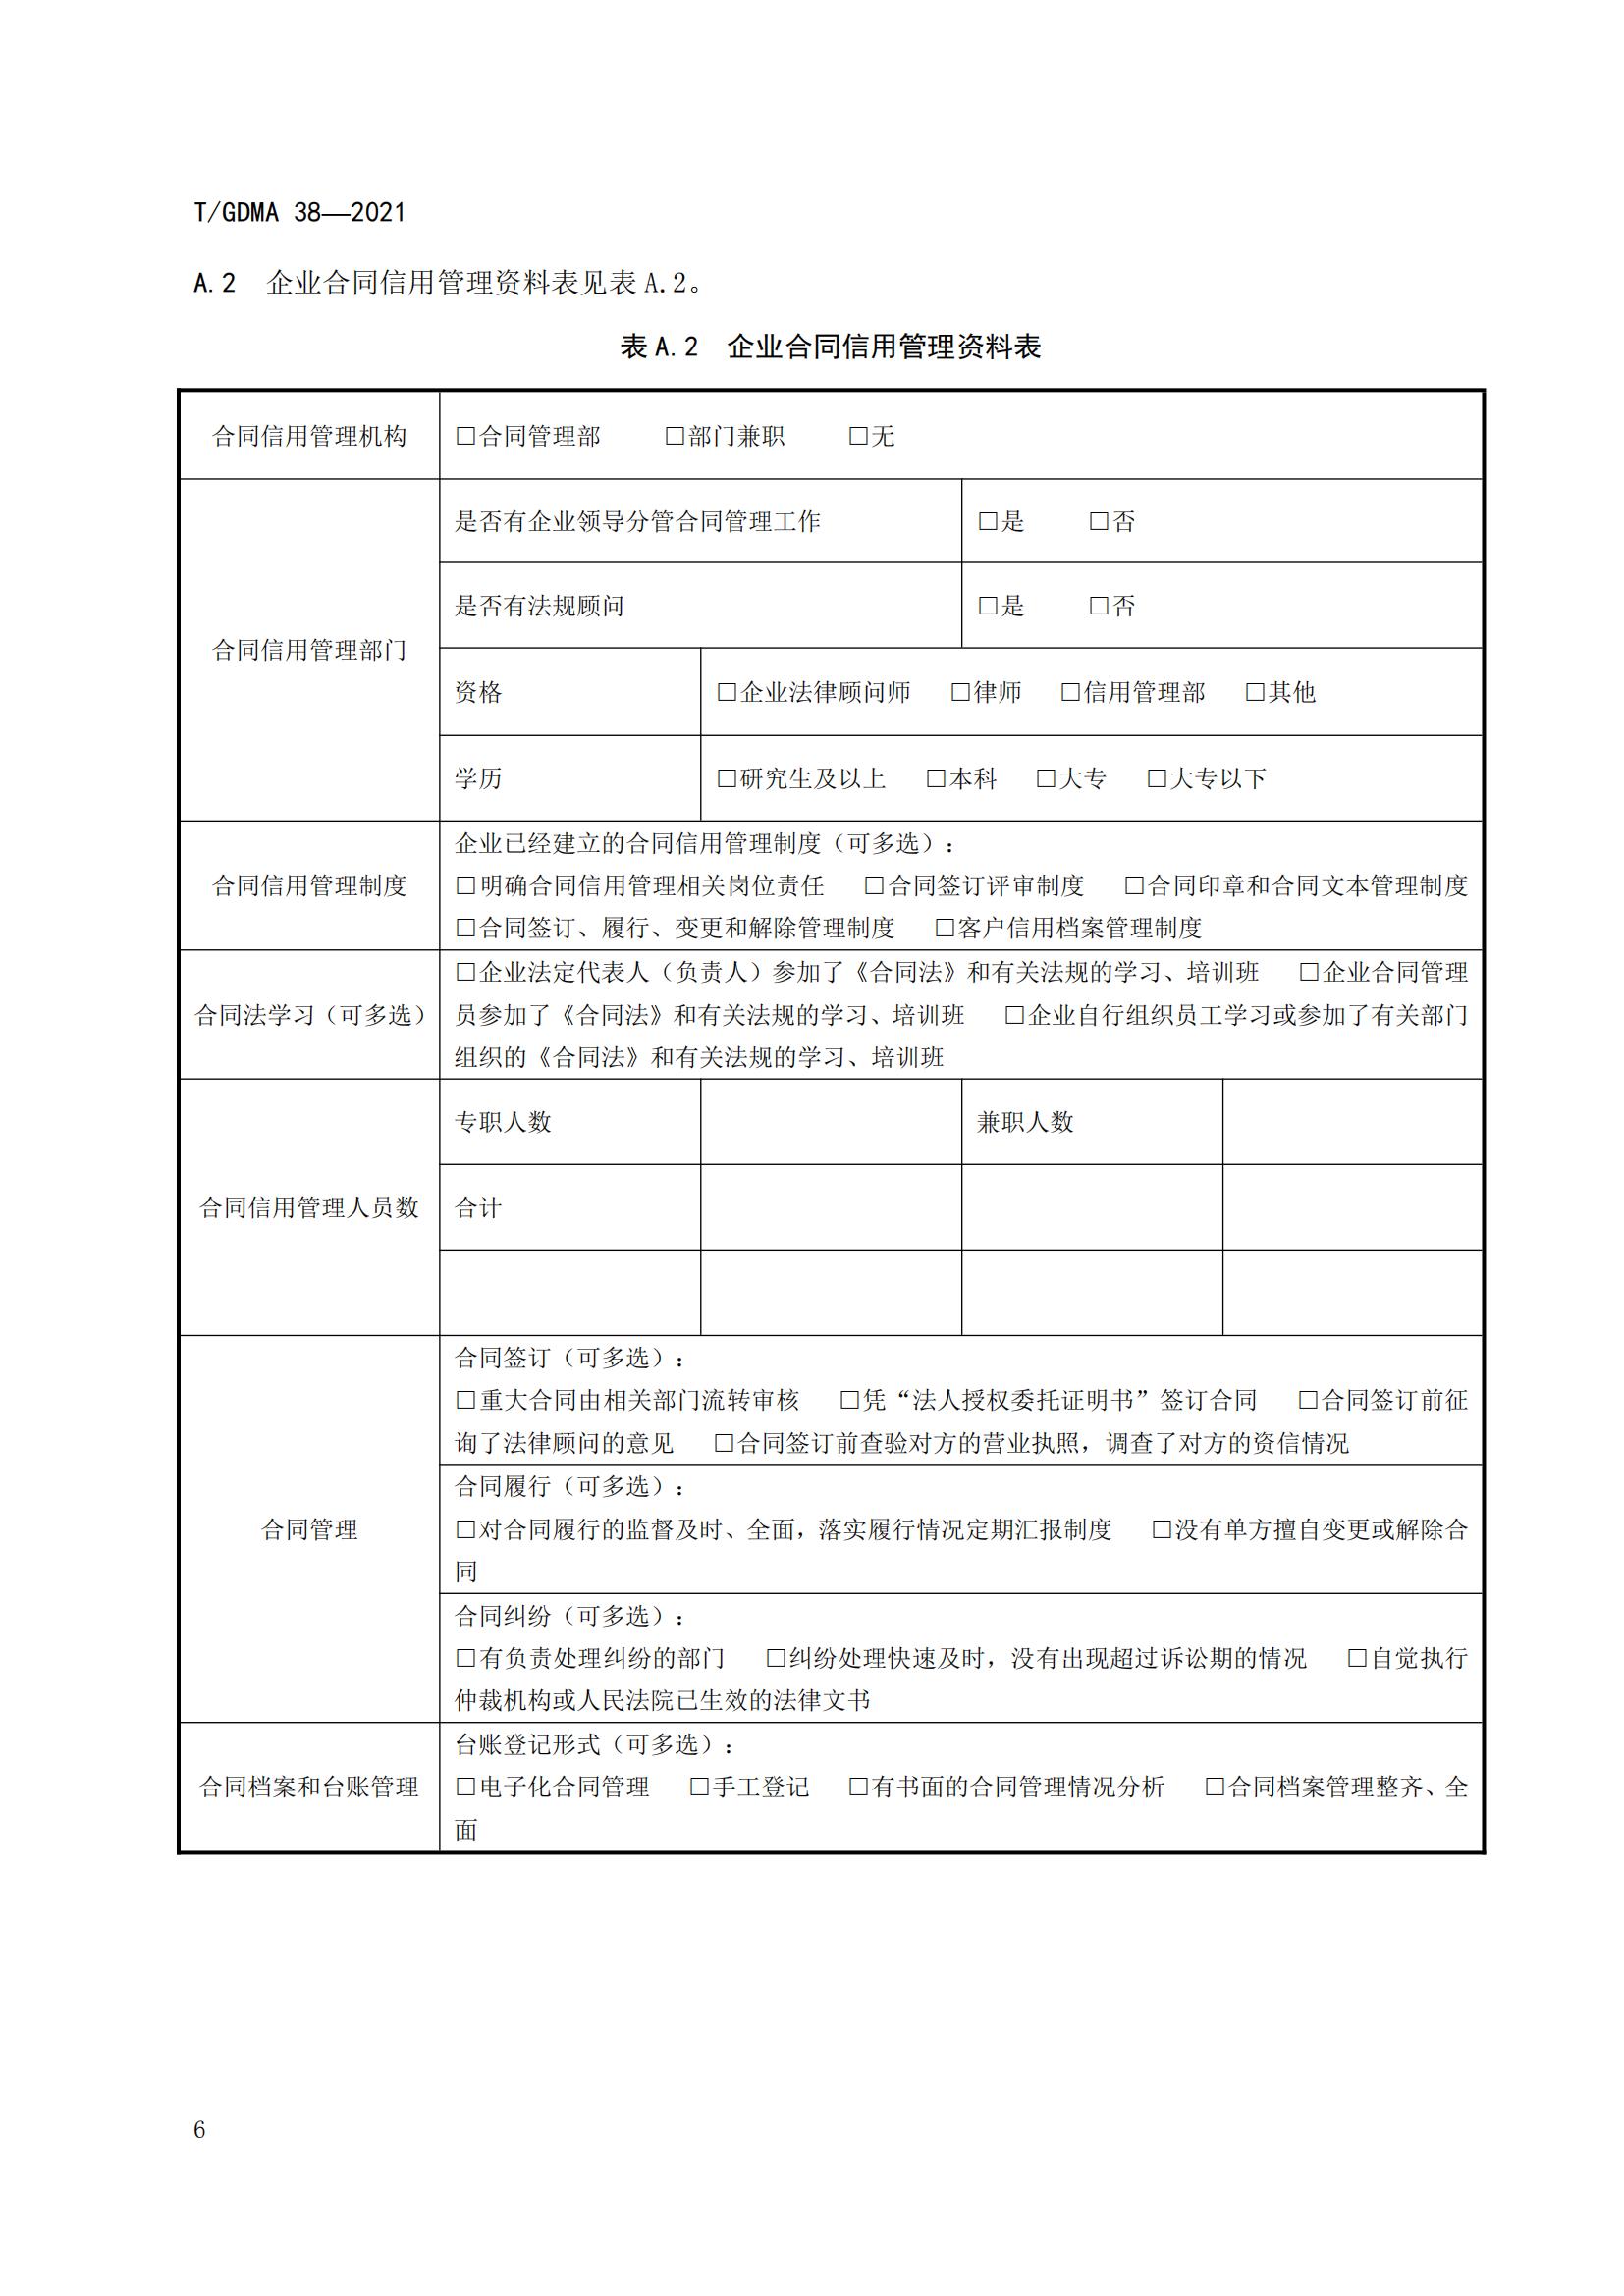 TGDMA 38 广东省守合同重信用企业等级评定规范-发布稿_09.jpg